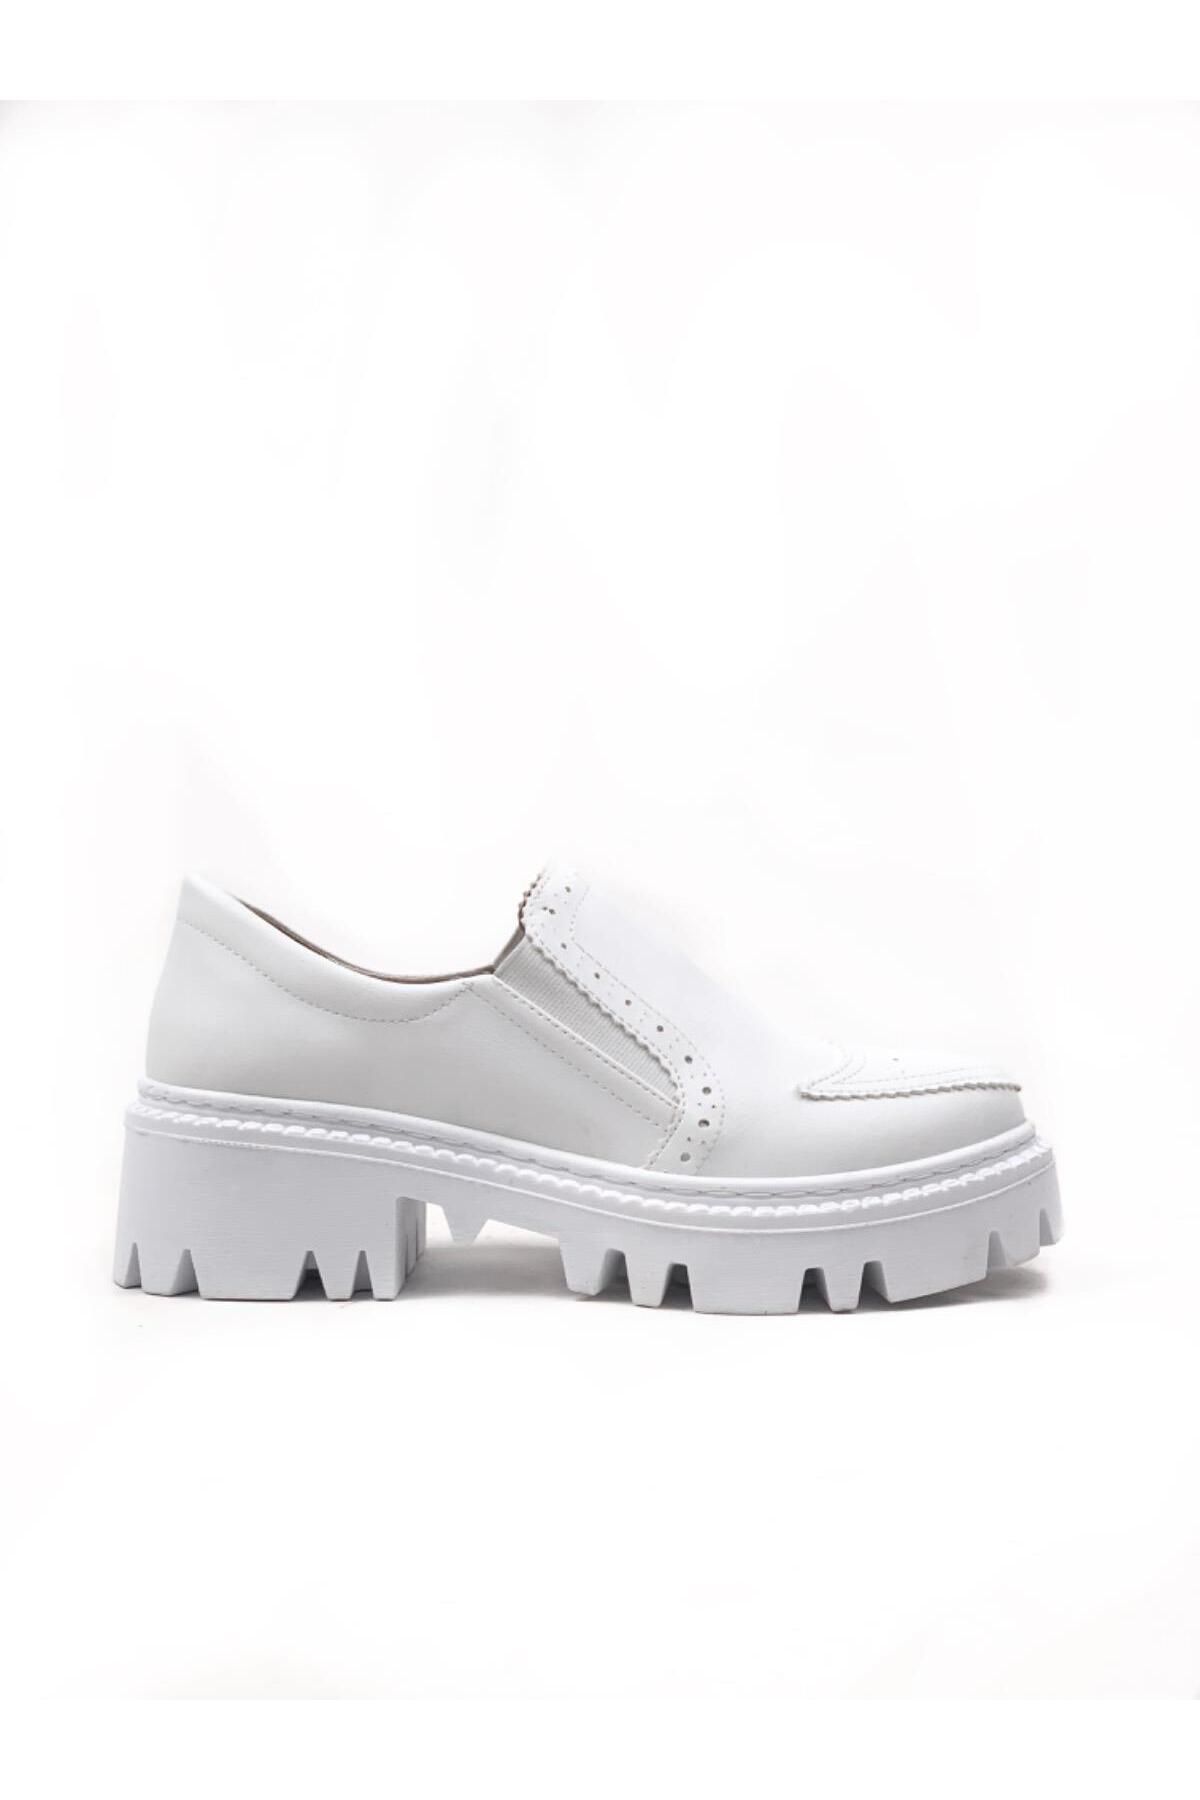 bescobel Kadın Beyaz Esdan Günlük Yürüyüş Leofer Makosen Ayakkabısı